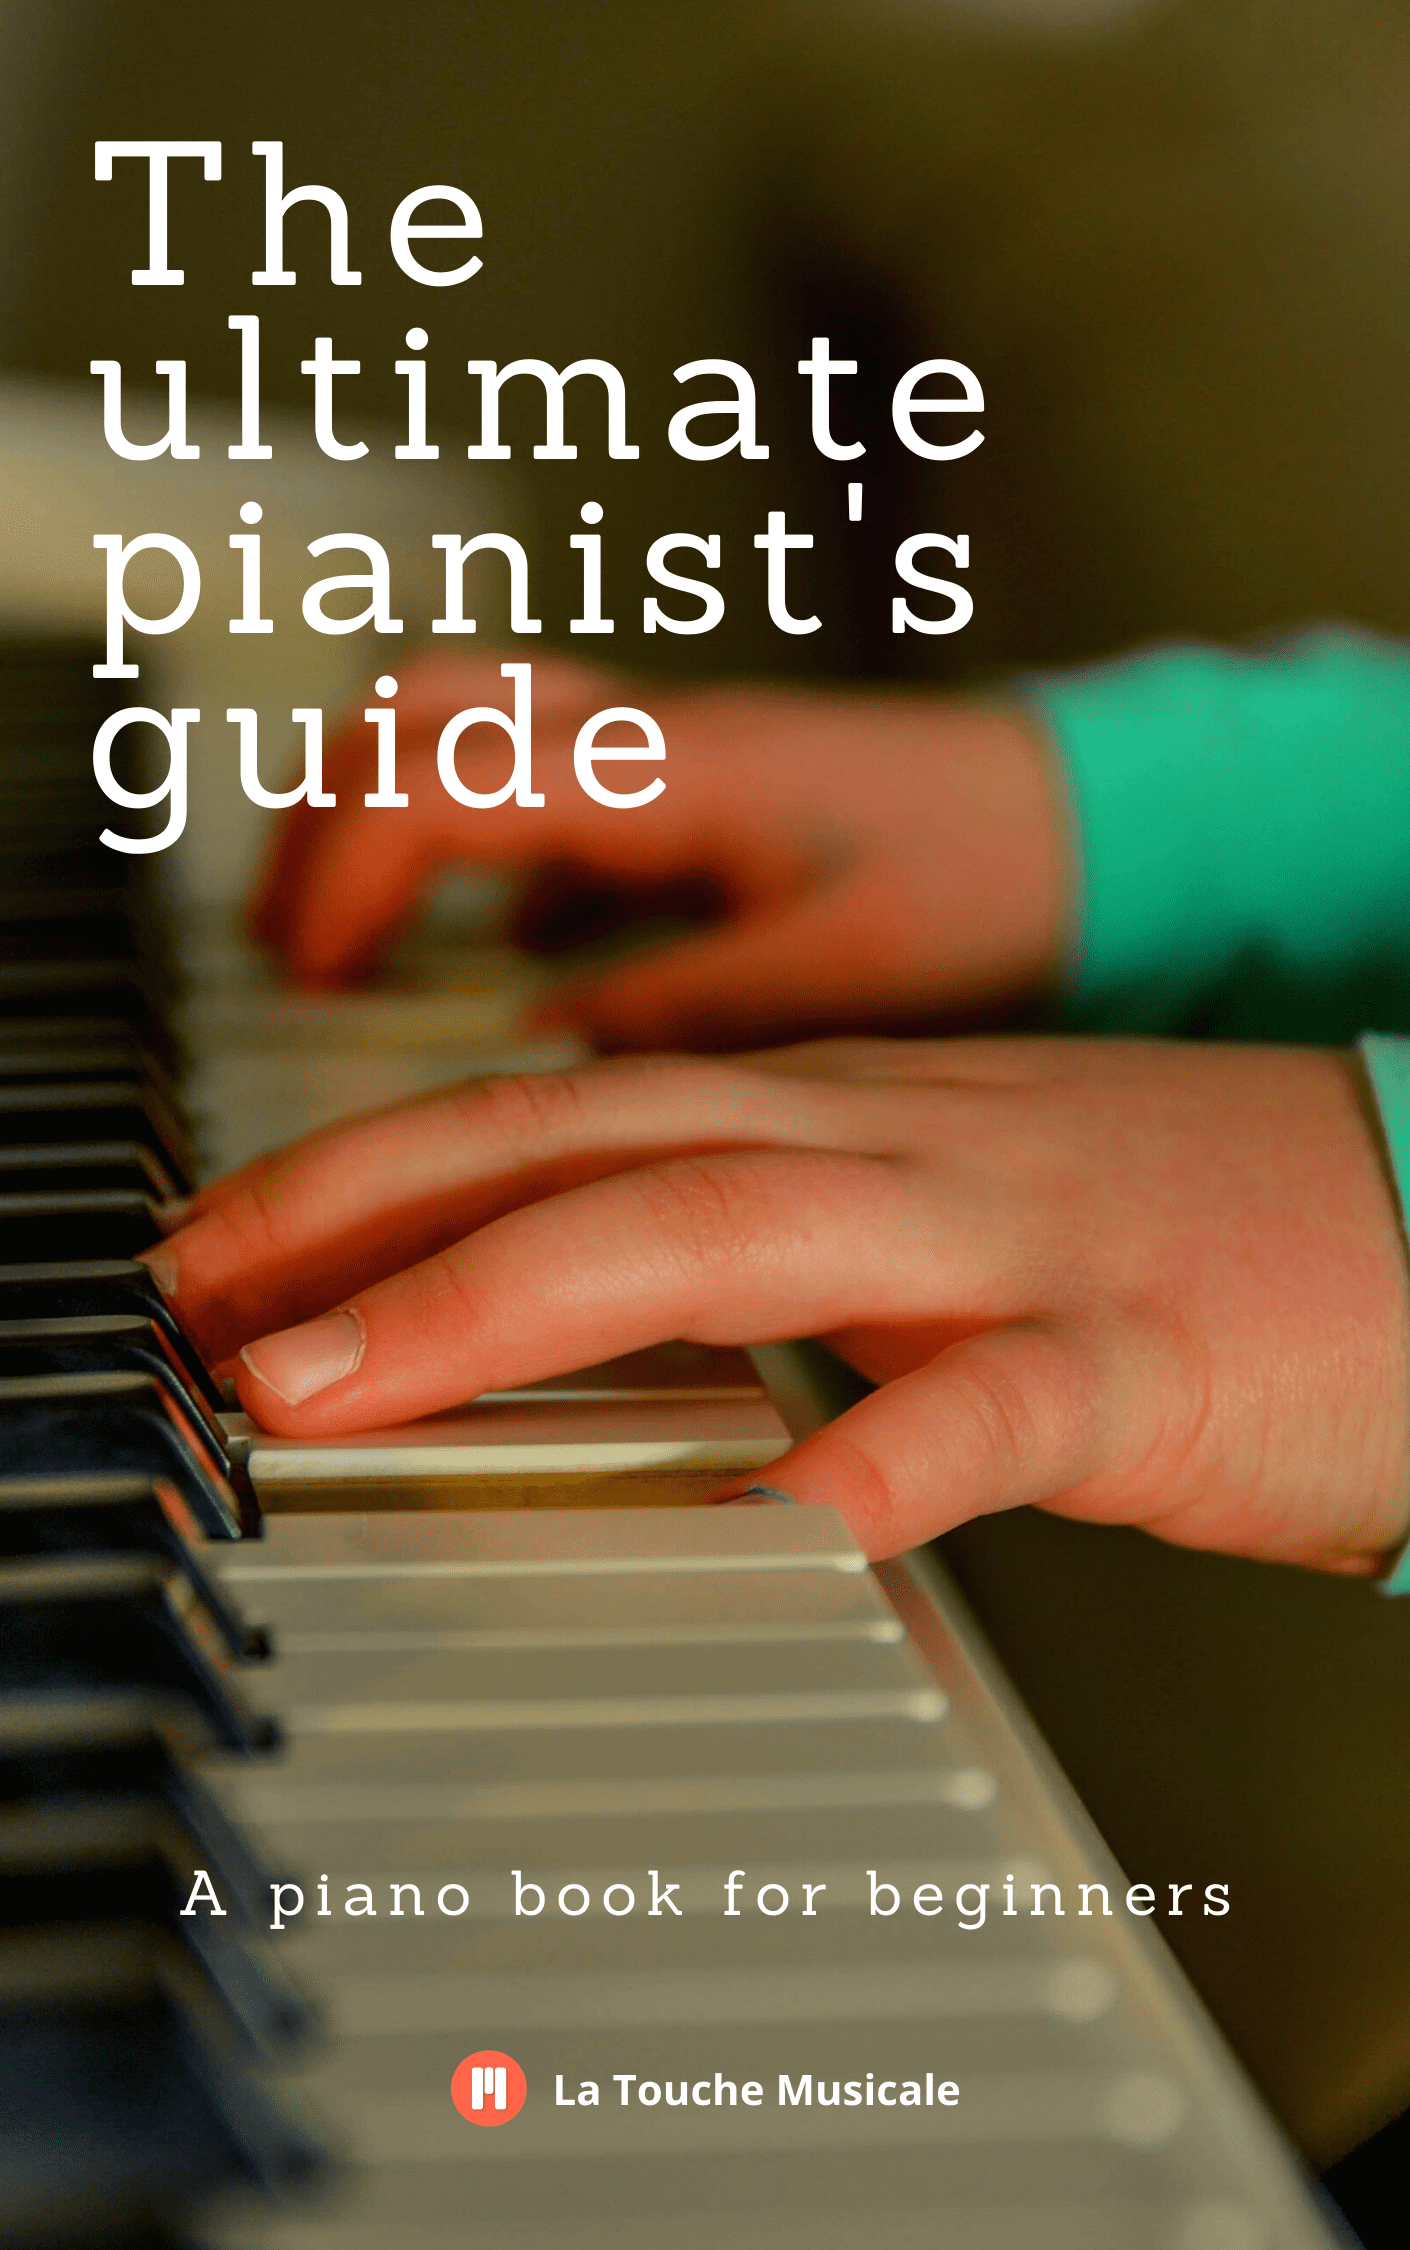 Libro de piano principiantes gratis en PDF - La Touche